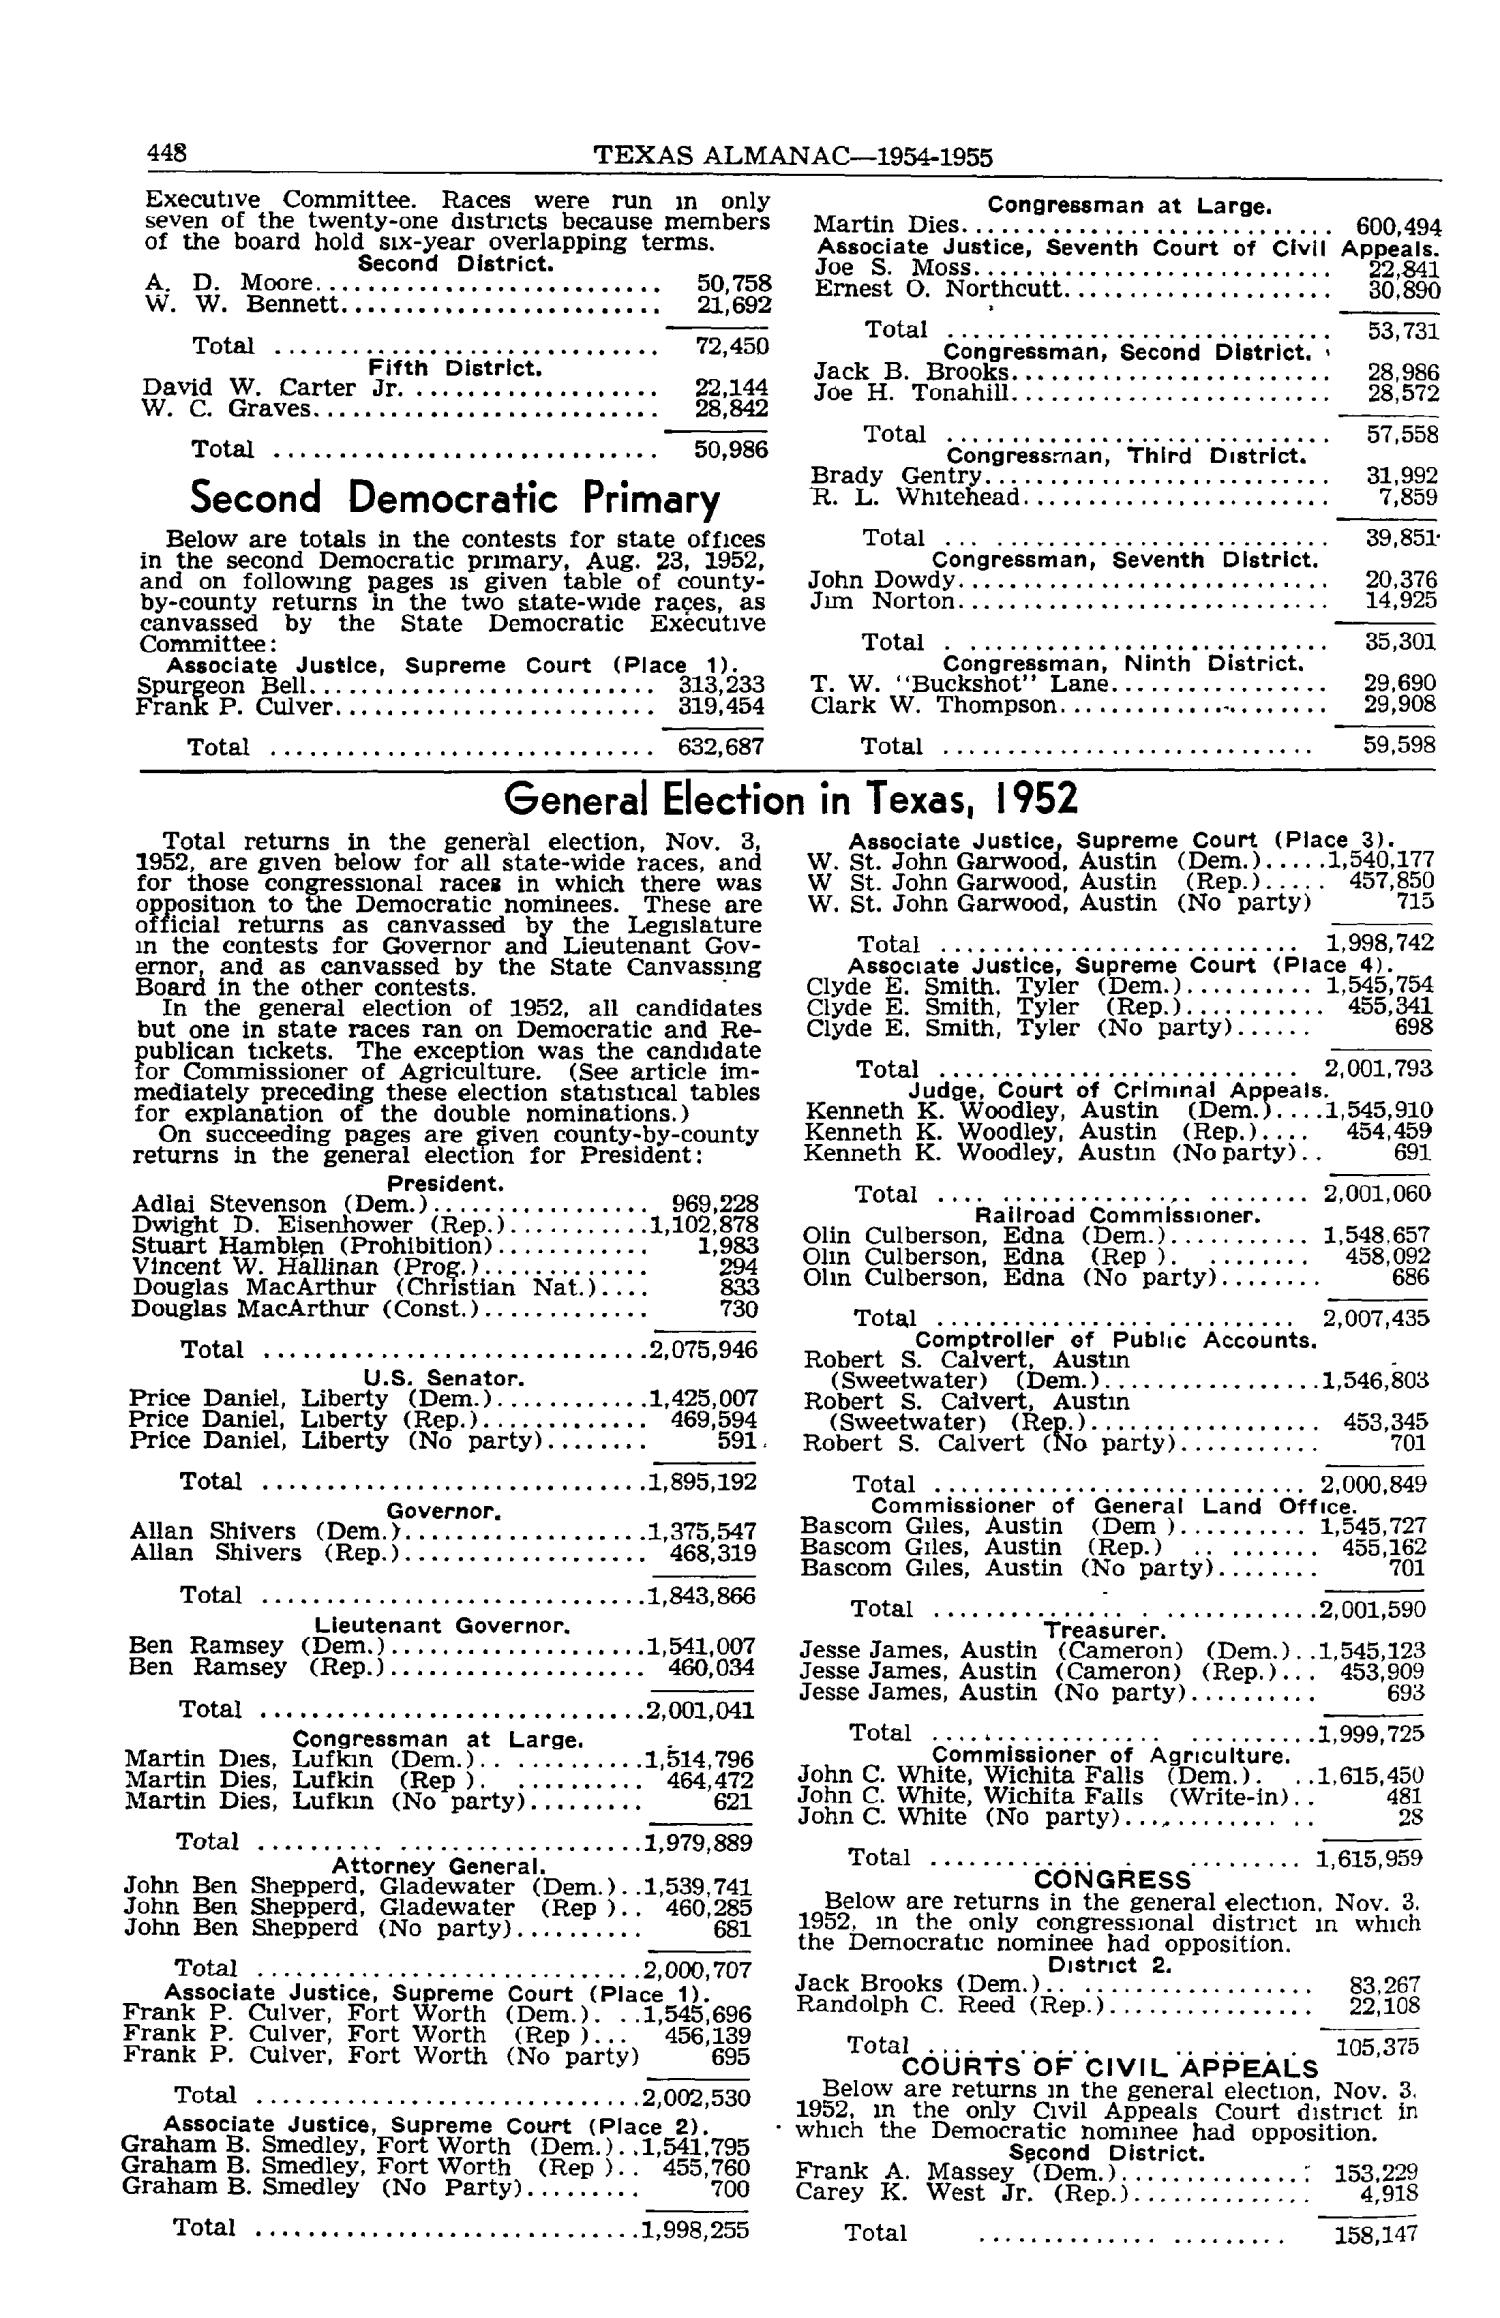 Texas Almanac, 1954-1955
                                                
                                                    448
                                                